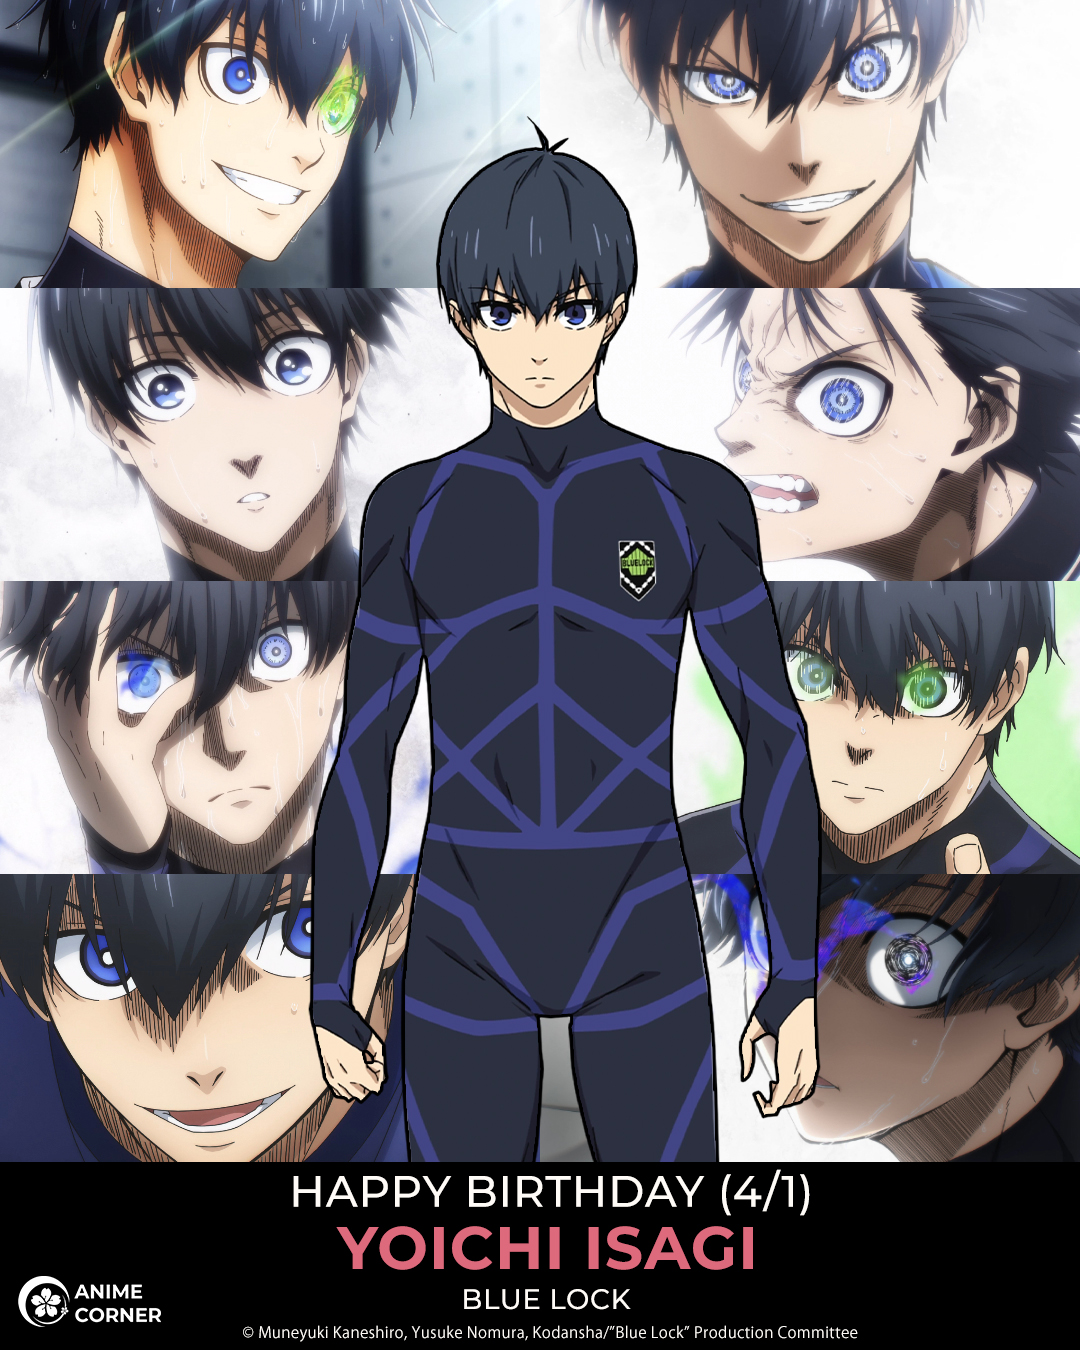 Blue Lock Characters Birthdays #anime #animeedit #birthday #bluelock #, blue lock character birthdays